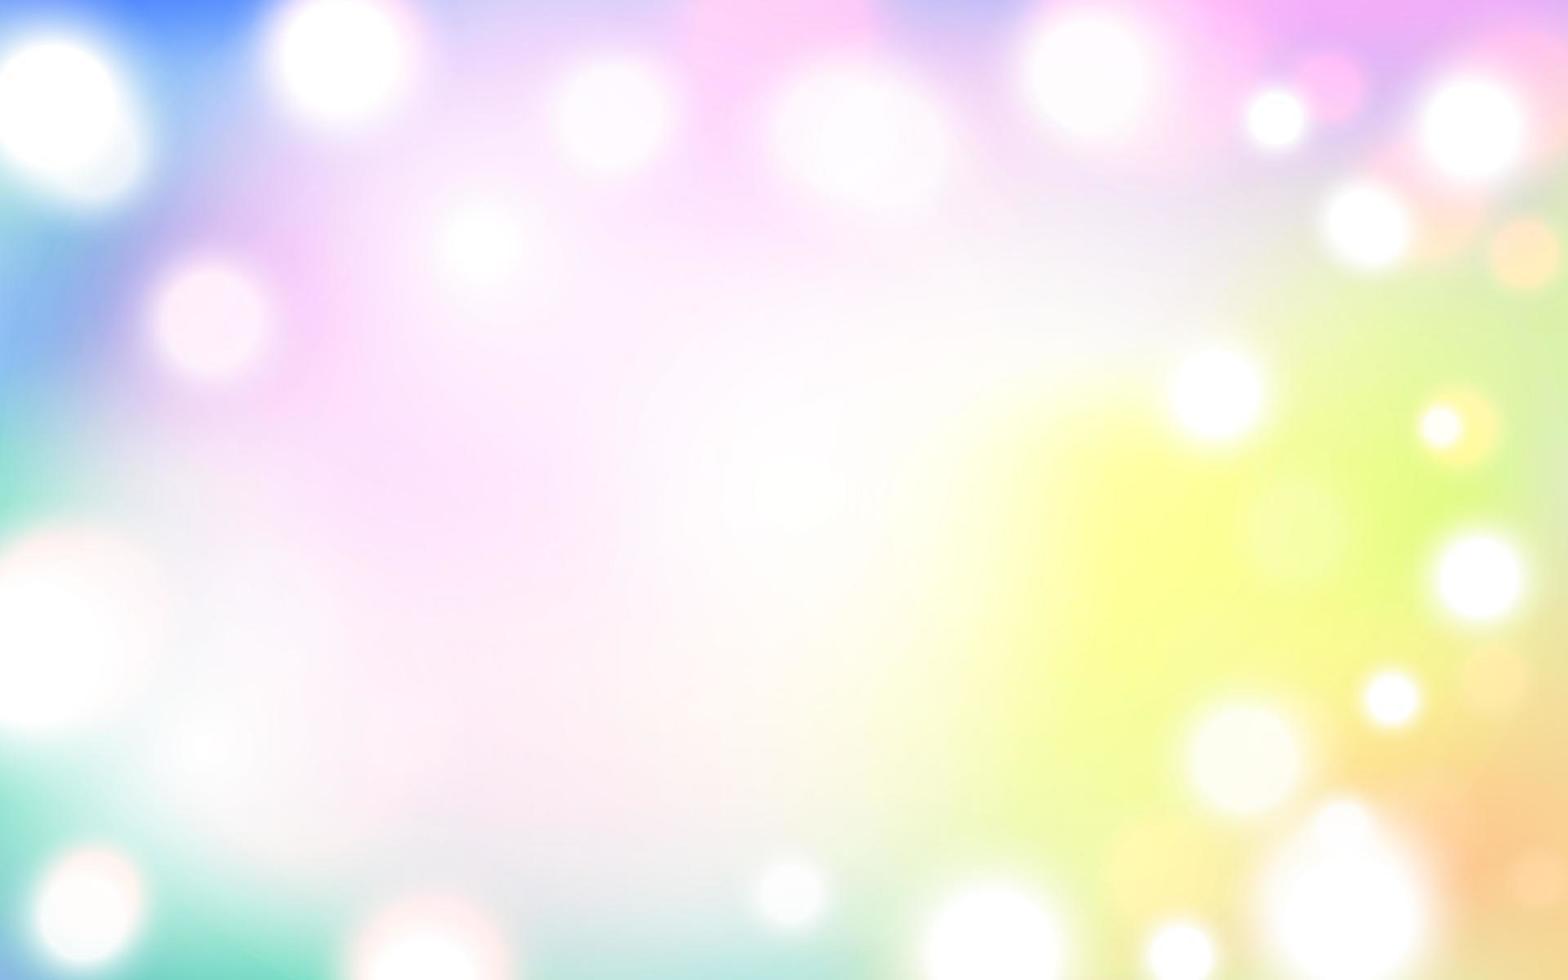 kleurrijk elegant bokeh zacht licht abstract achtergrond, vector eps 10 illustratie bokeh deeltjes, achtergrond decoratie